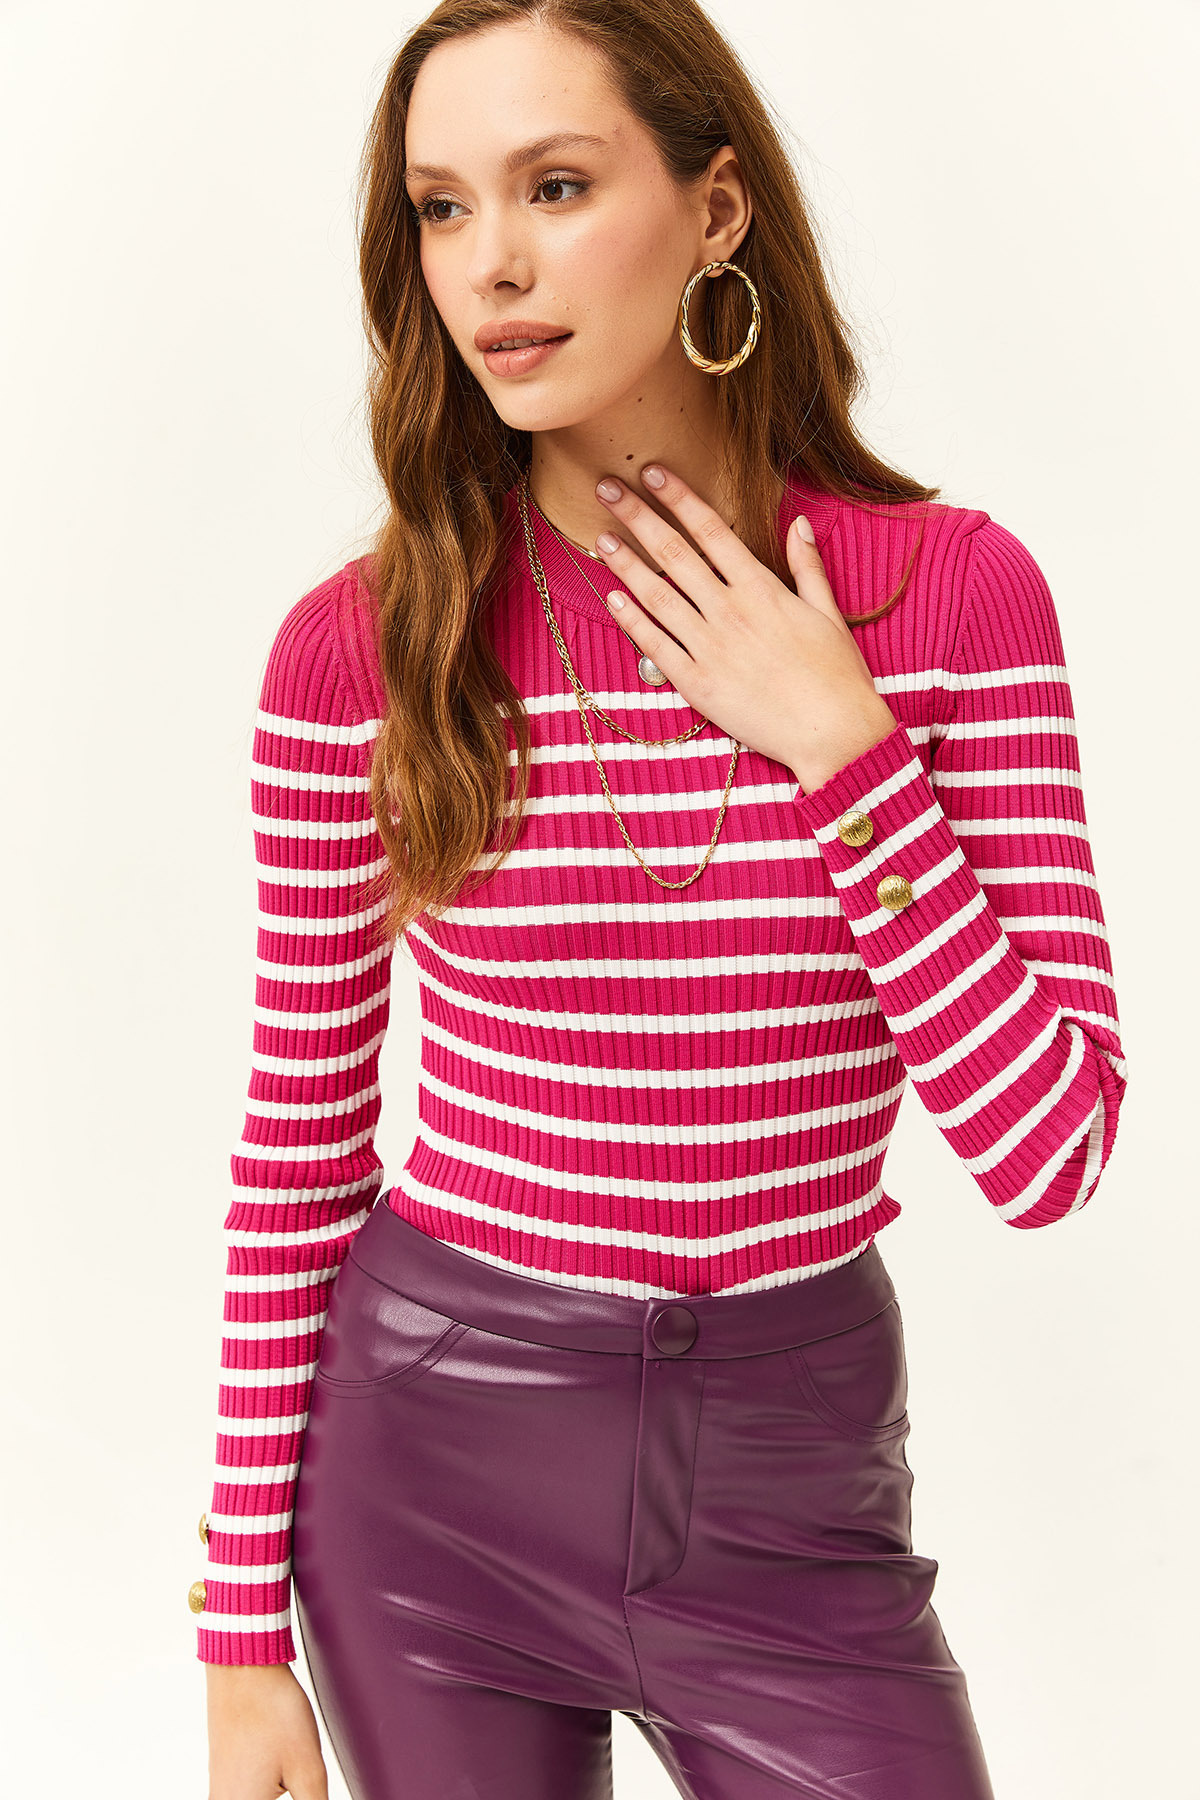 Женская трикотажная блузка цвета фуксии в полоску с манжетами на пуговицах и лайкрой Olalook, розовый